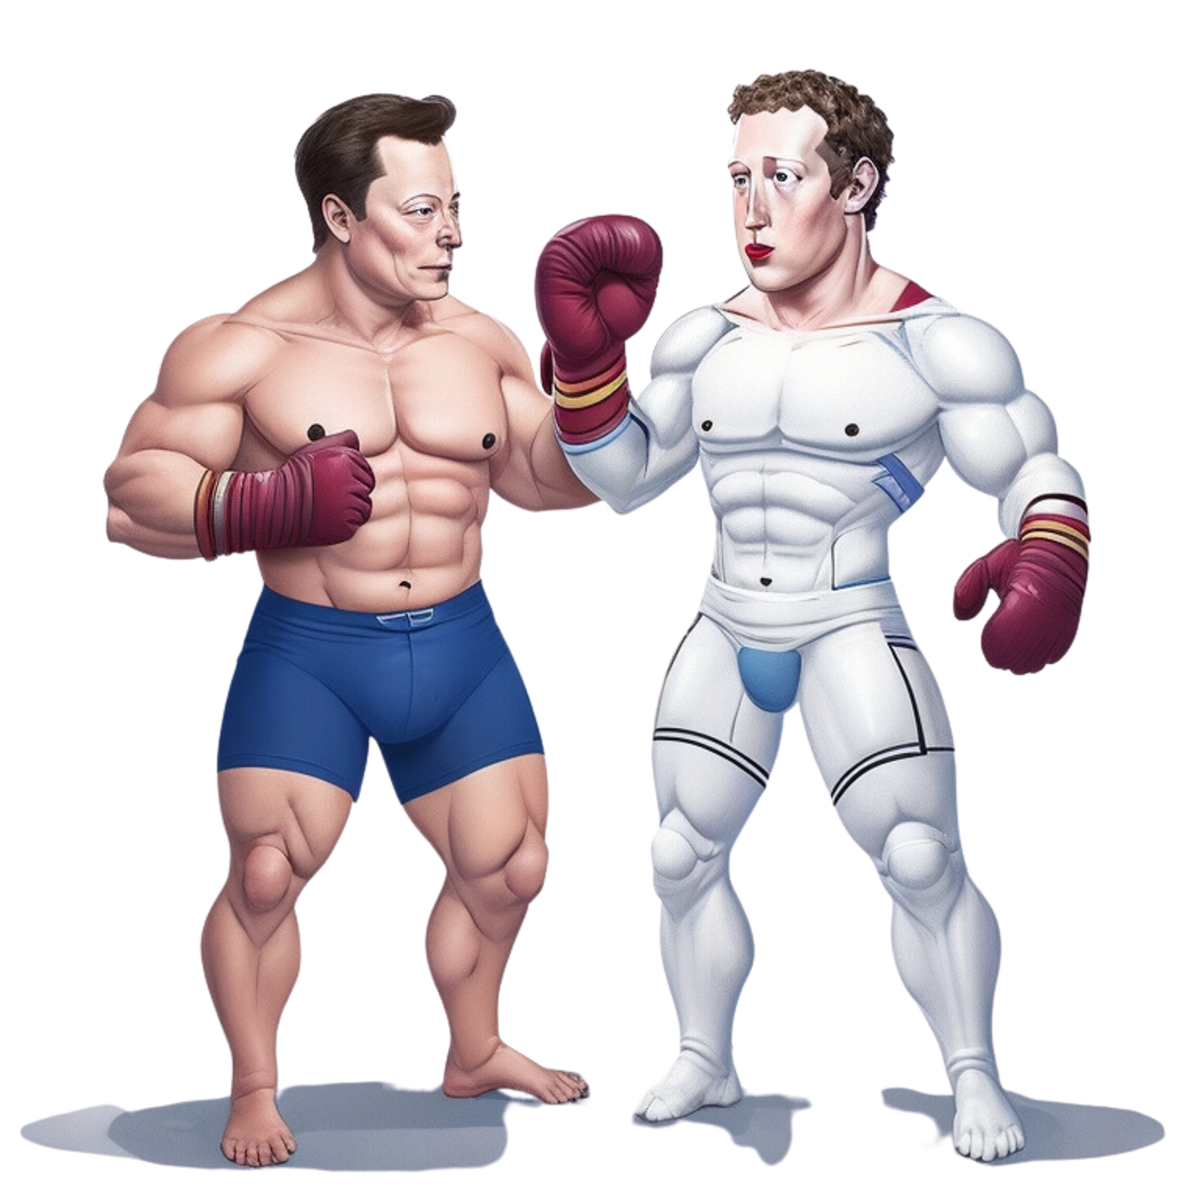 Tech Titans Clash: Elon Musk vs. Mark Zuckerberg in an Epic Cage Fight Showdown